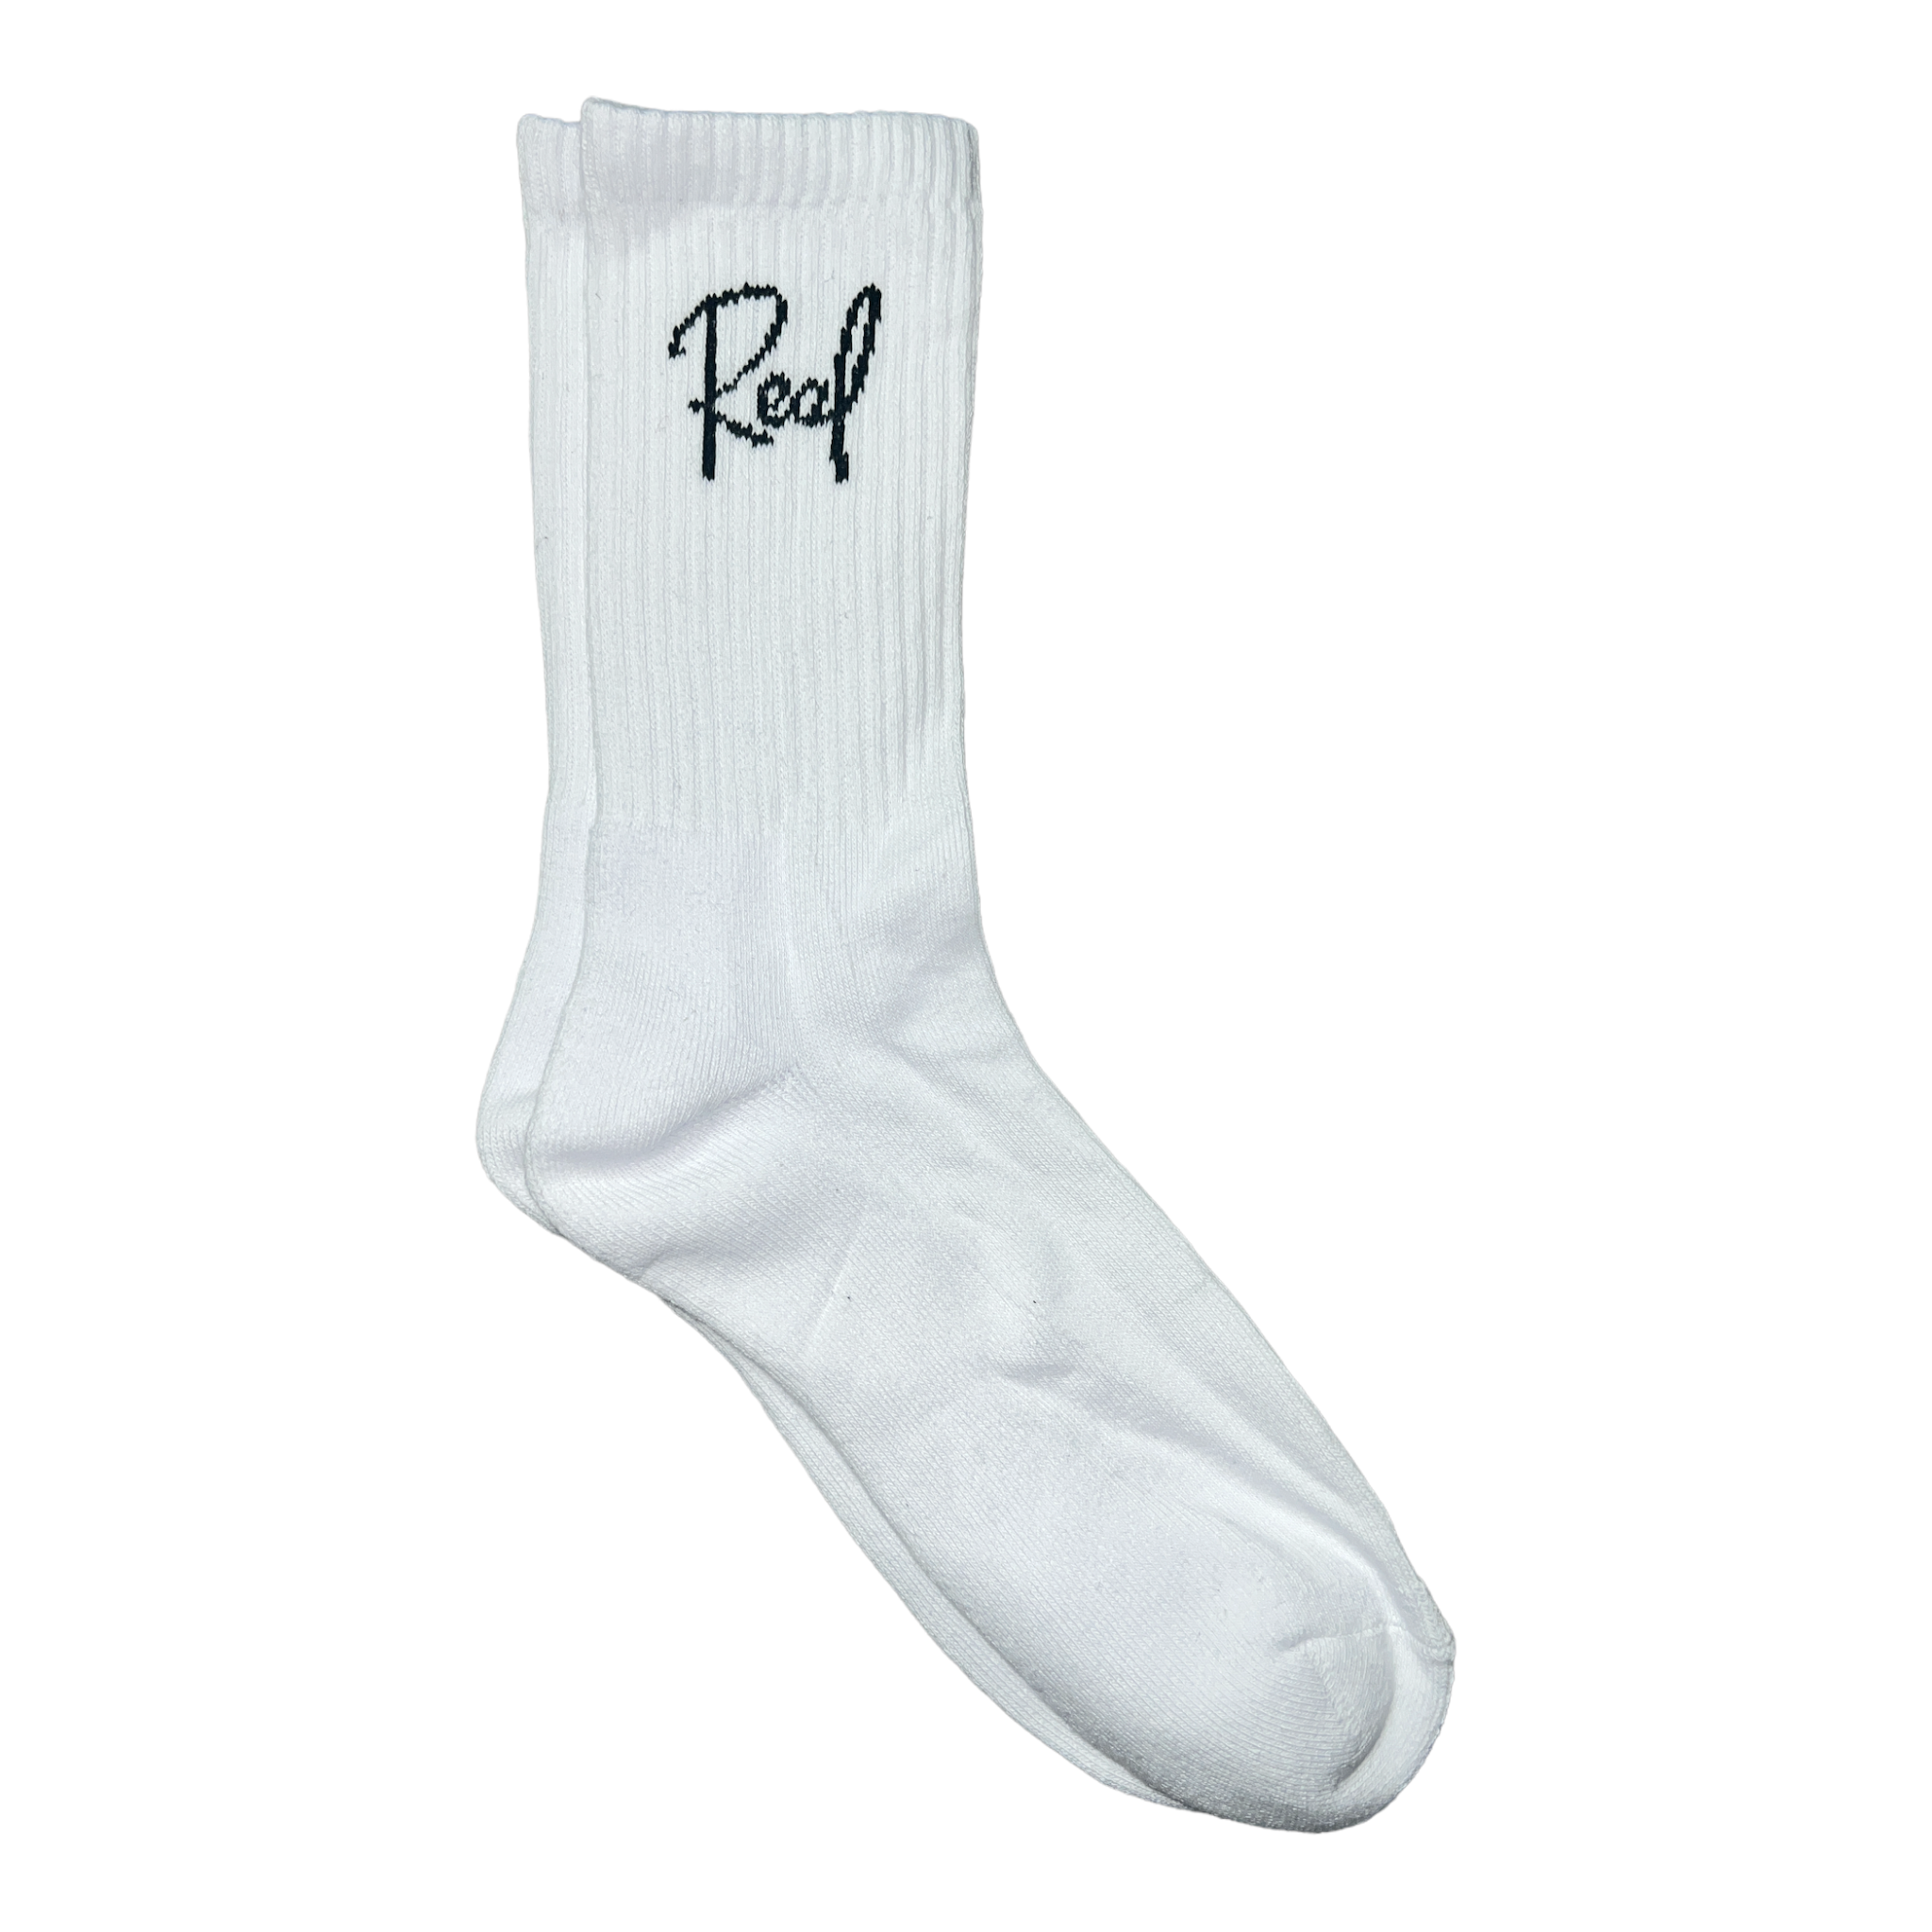 REAL Premium Socks